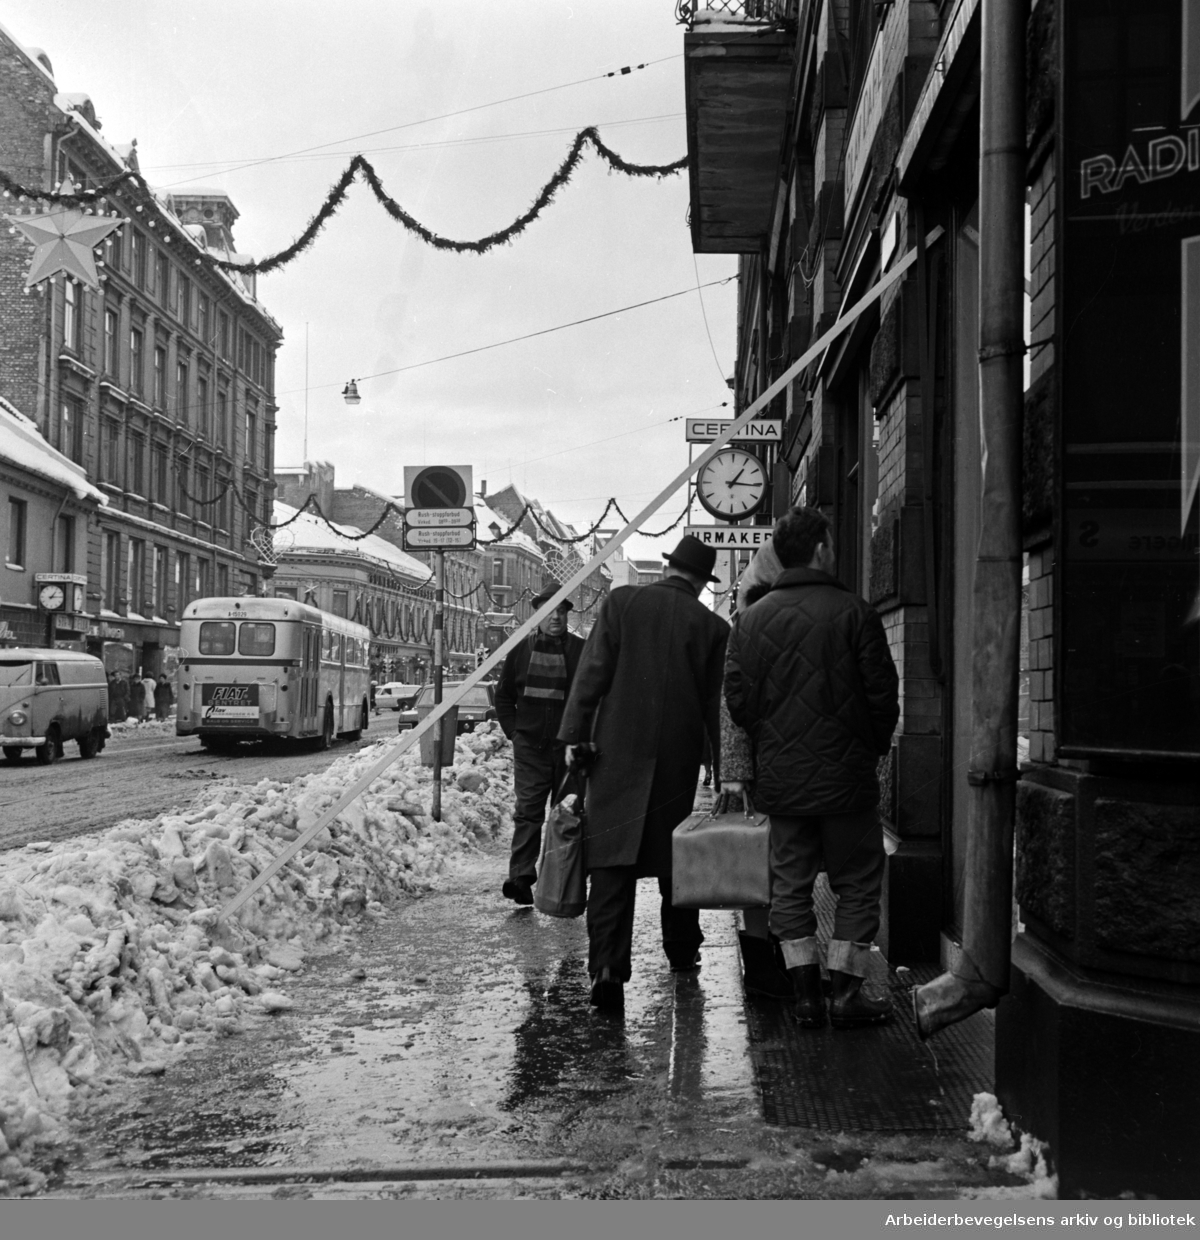 "I sentrum hadde mange gårdeiere selv sørget for å rydde fortauene. Men faren truet ovenfra. Flere gående ungikk med snau klaring snørasene, mens andre ble truffet". Storgata. Desember 1967.